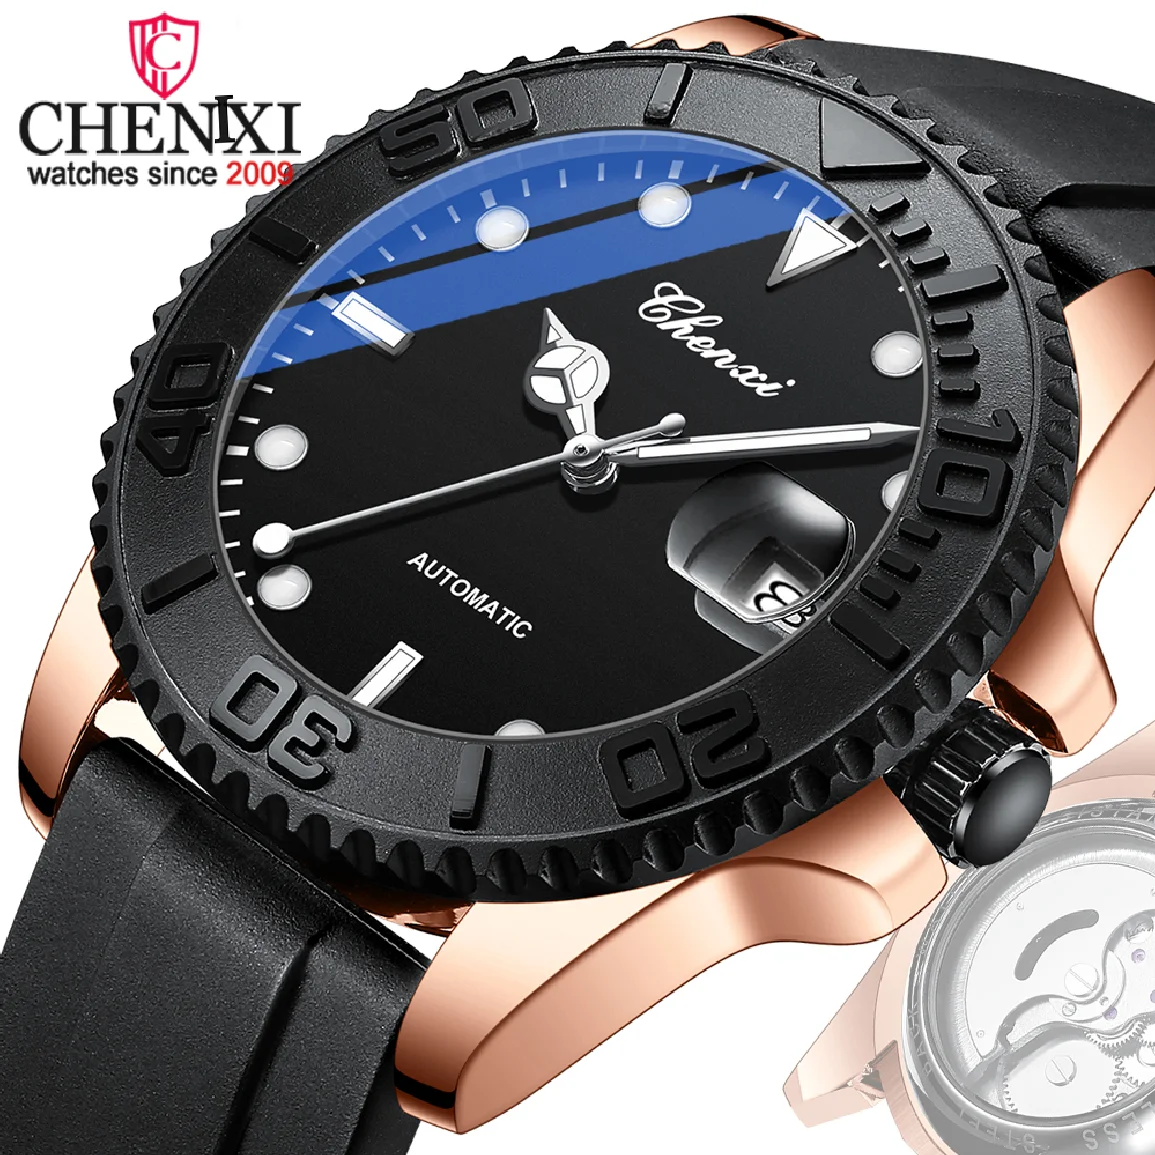 

Автоматические механические мужские часы бренда CHENXI, Роскошные водонепроницаемые кварцевые наручные часы с кожаным ремешком и турбийоном,...